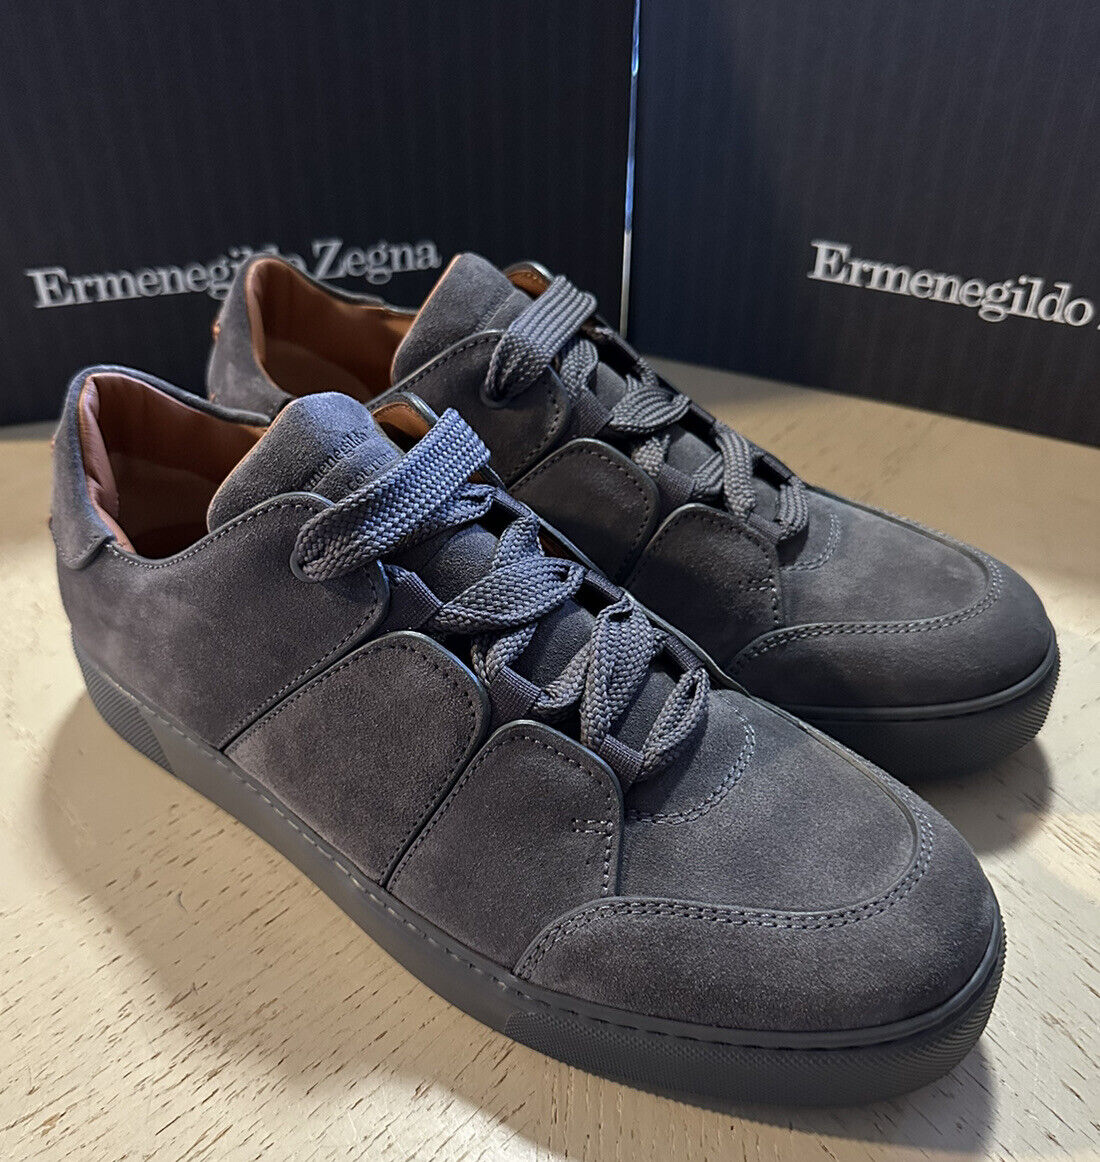 Neue $850 Ermenegildo Zegna Couture Wildleder/Leder Sneakers Schuhe Dunkelgrau 9,5 US